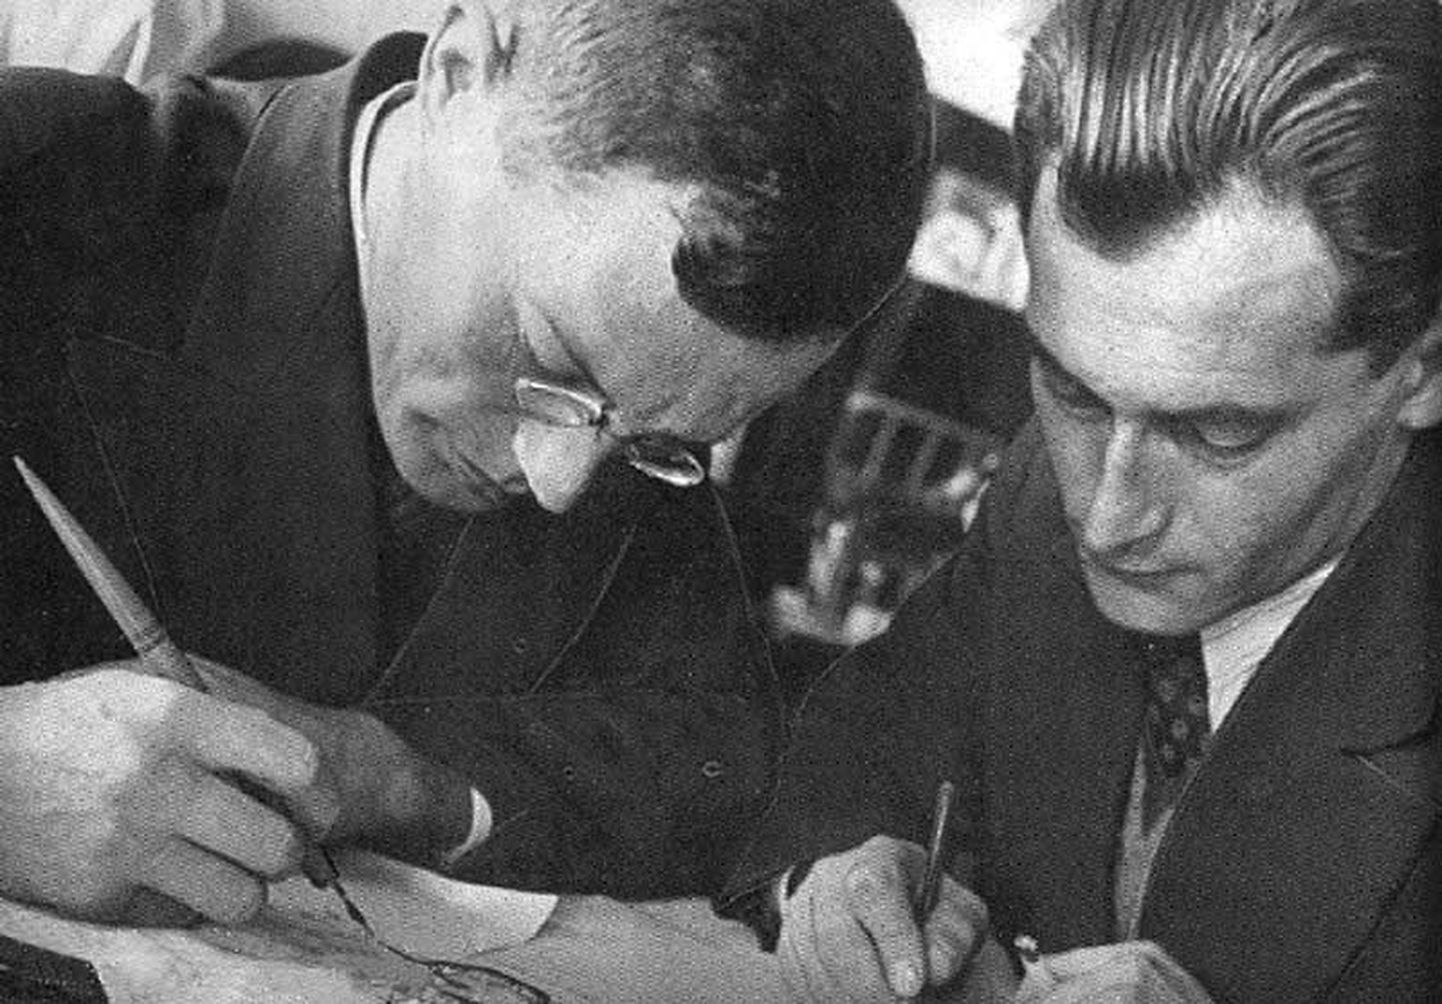 Kirjanikud tööhoos: Ilja Ilf (vasakul) ja Jevgeni Petrov. Aasta on 1932.